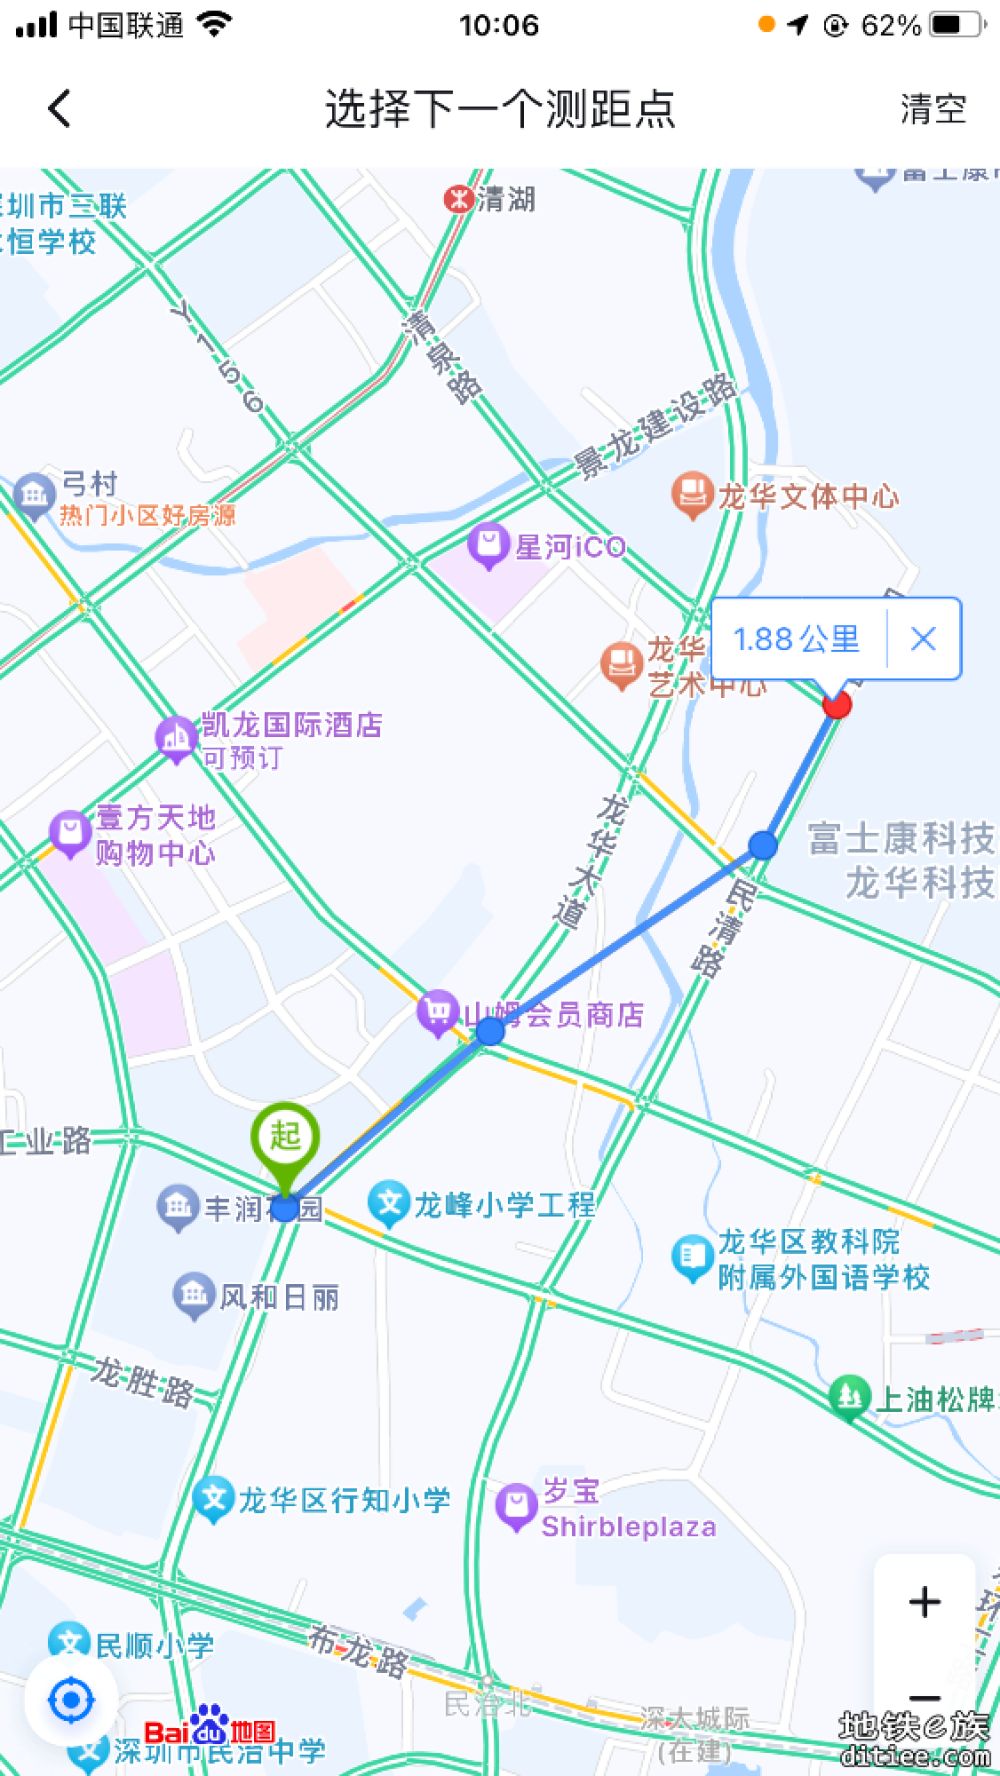 深圳市城市轨道交通27号线一期工程社会稳定性风险分析公众参与信息网络公示